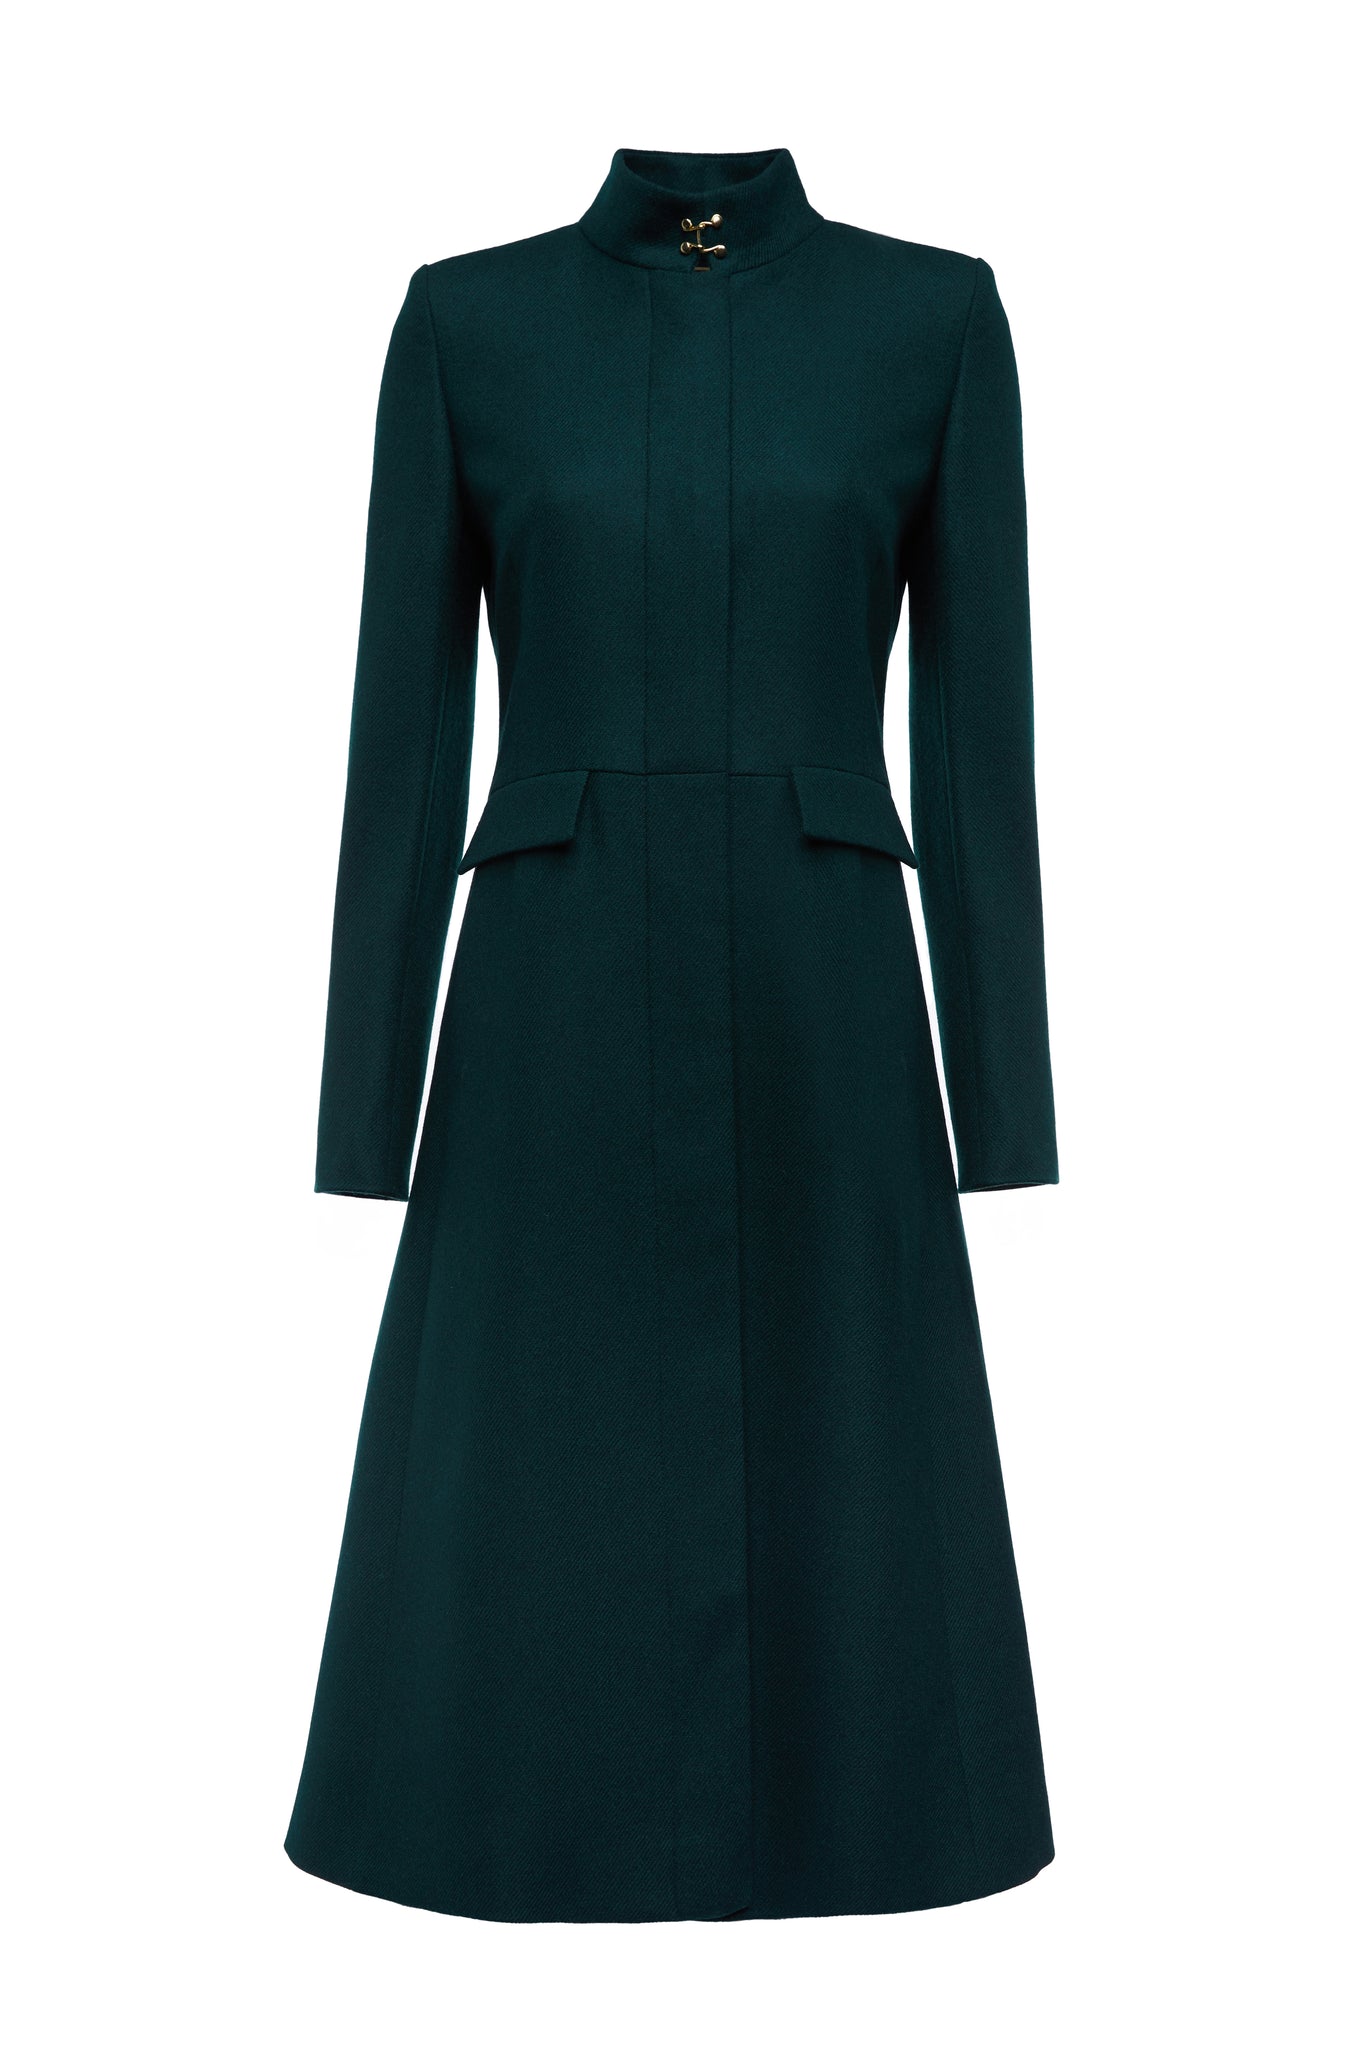 Dowdeswell Coat (Emerald)